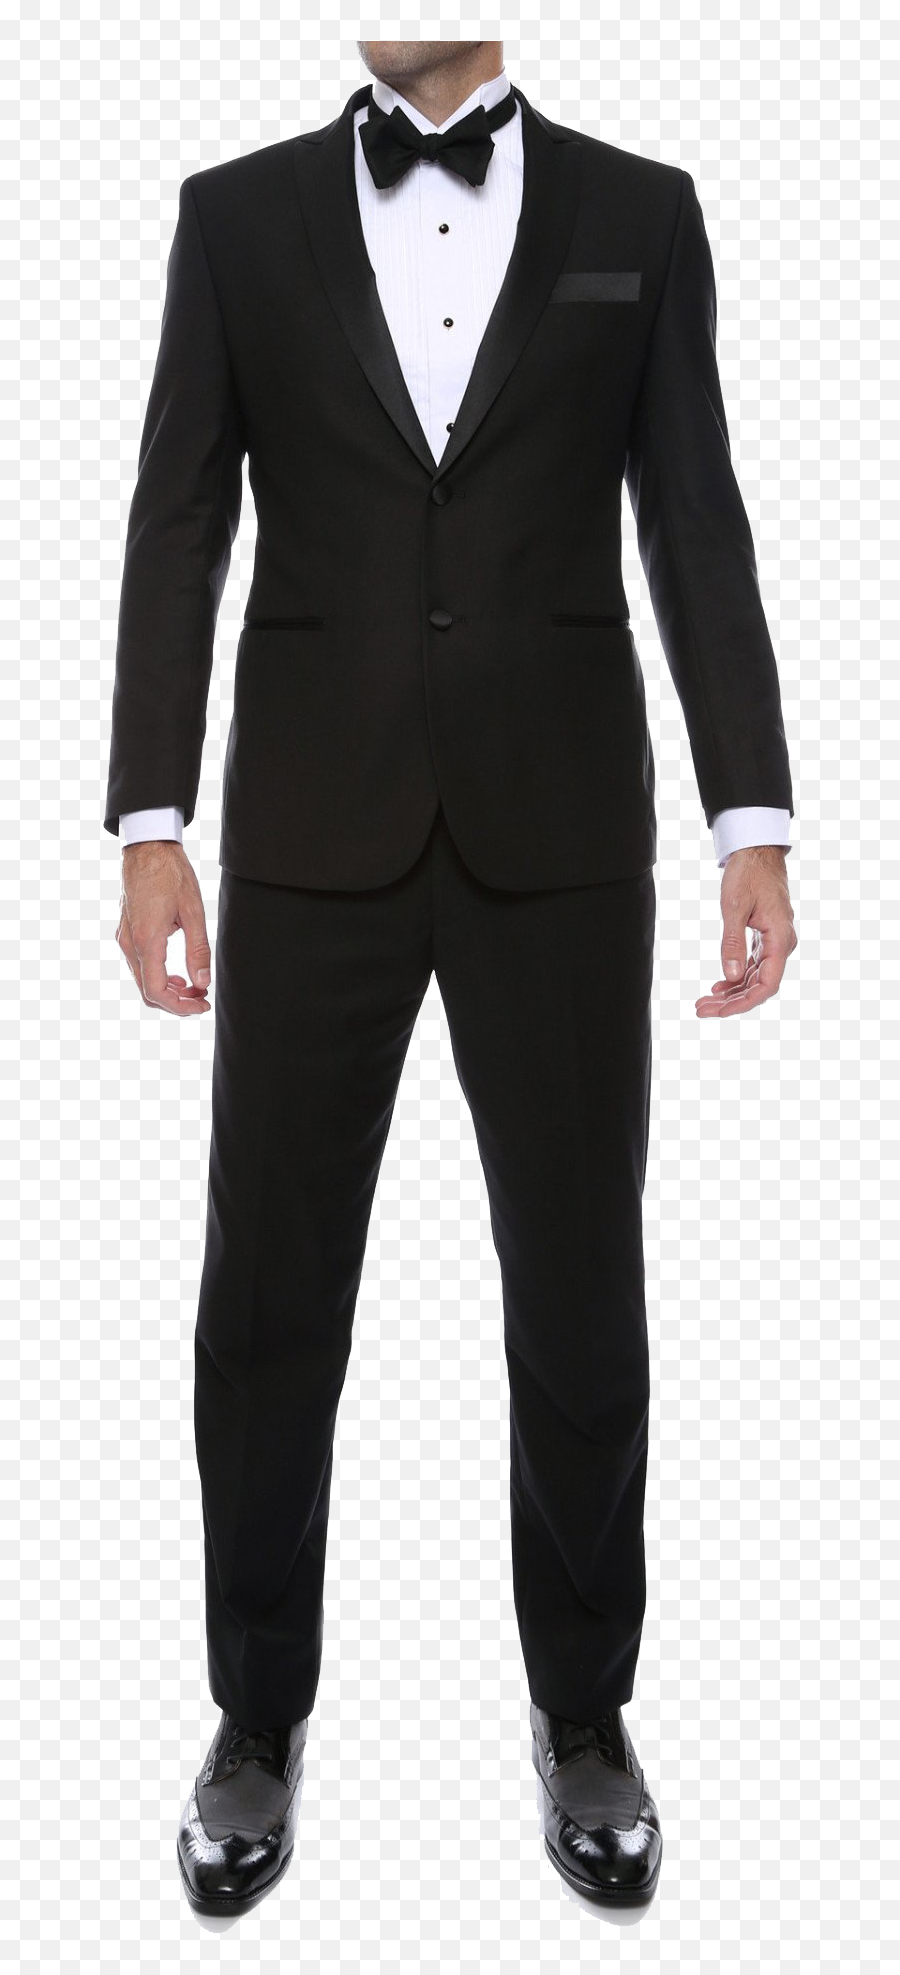 Black Tuxedo Suit Transparent - Smoking Suit Png,Suit Transparent